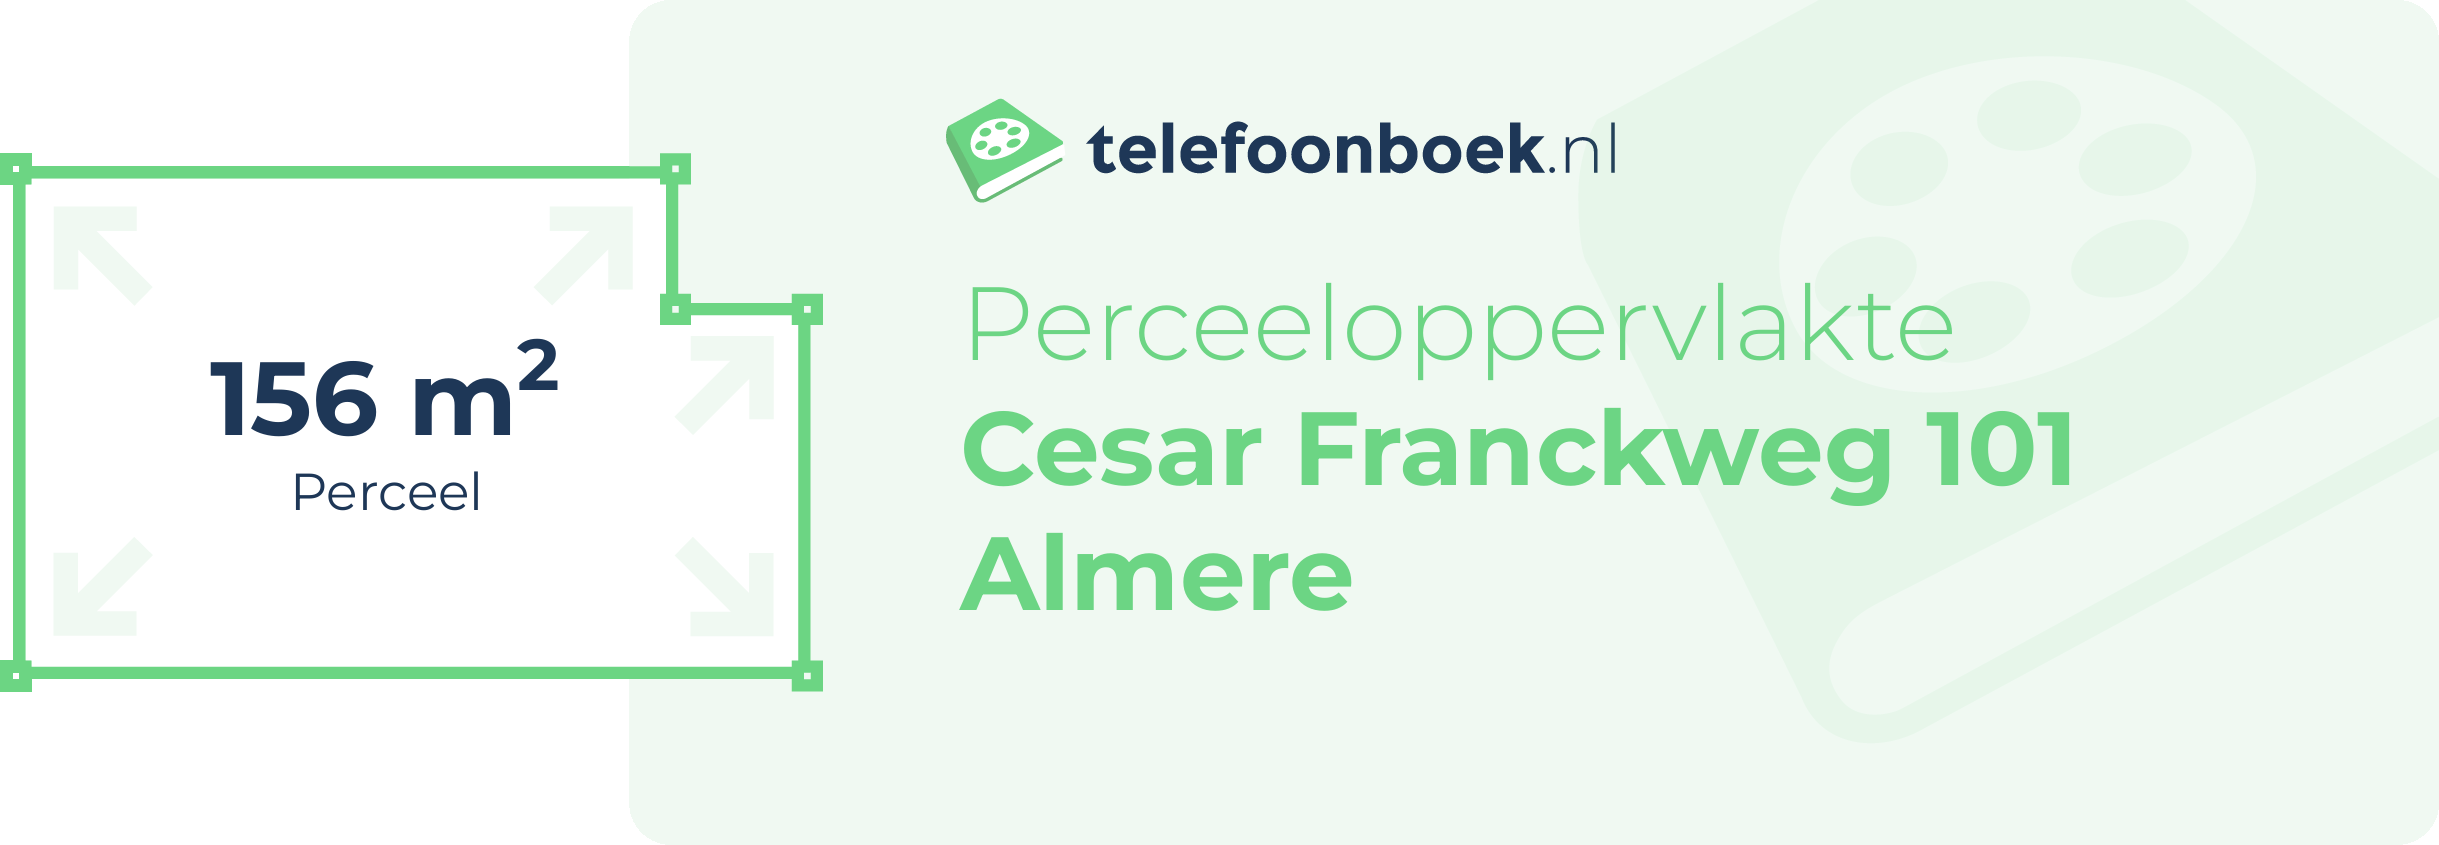 Perceeloppervlakte Cesar Franckweg 101 Almere